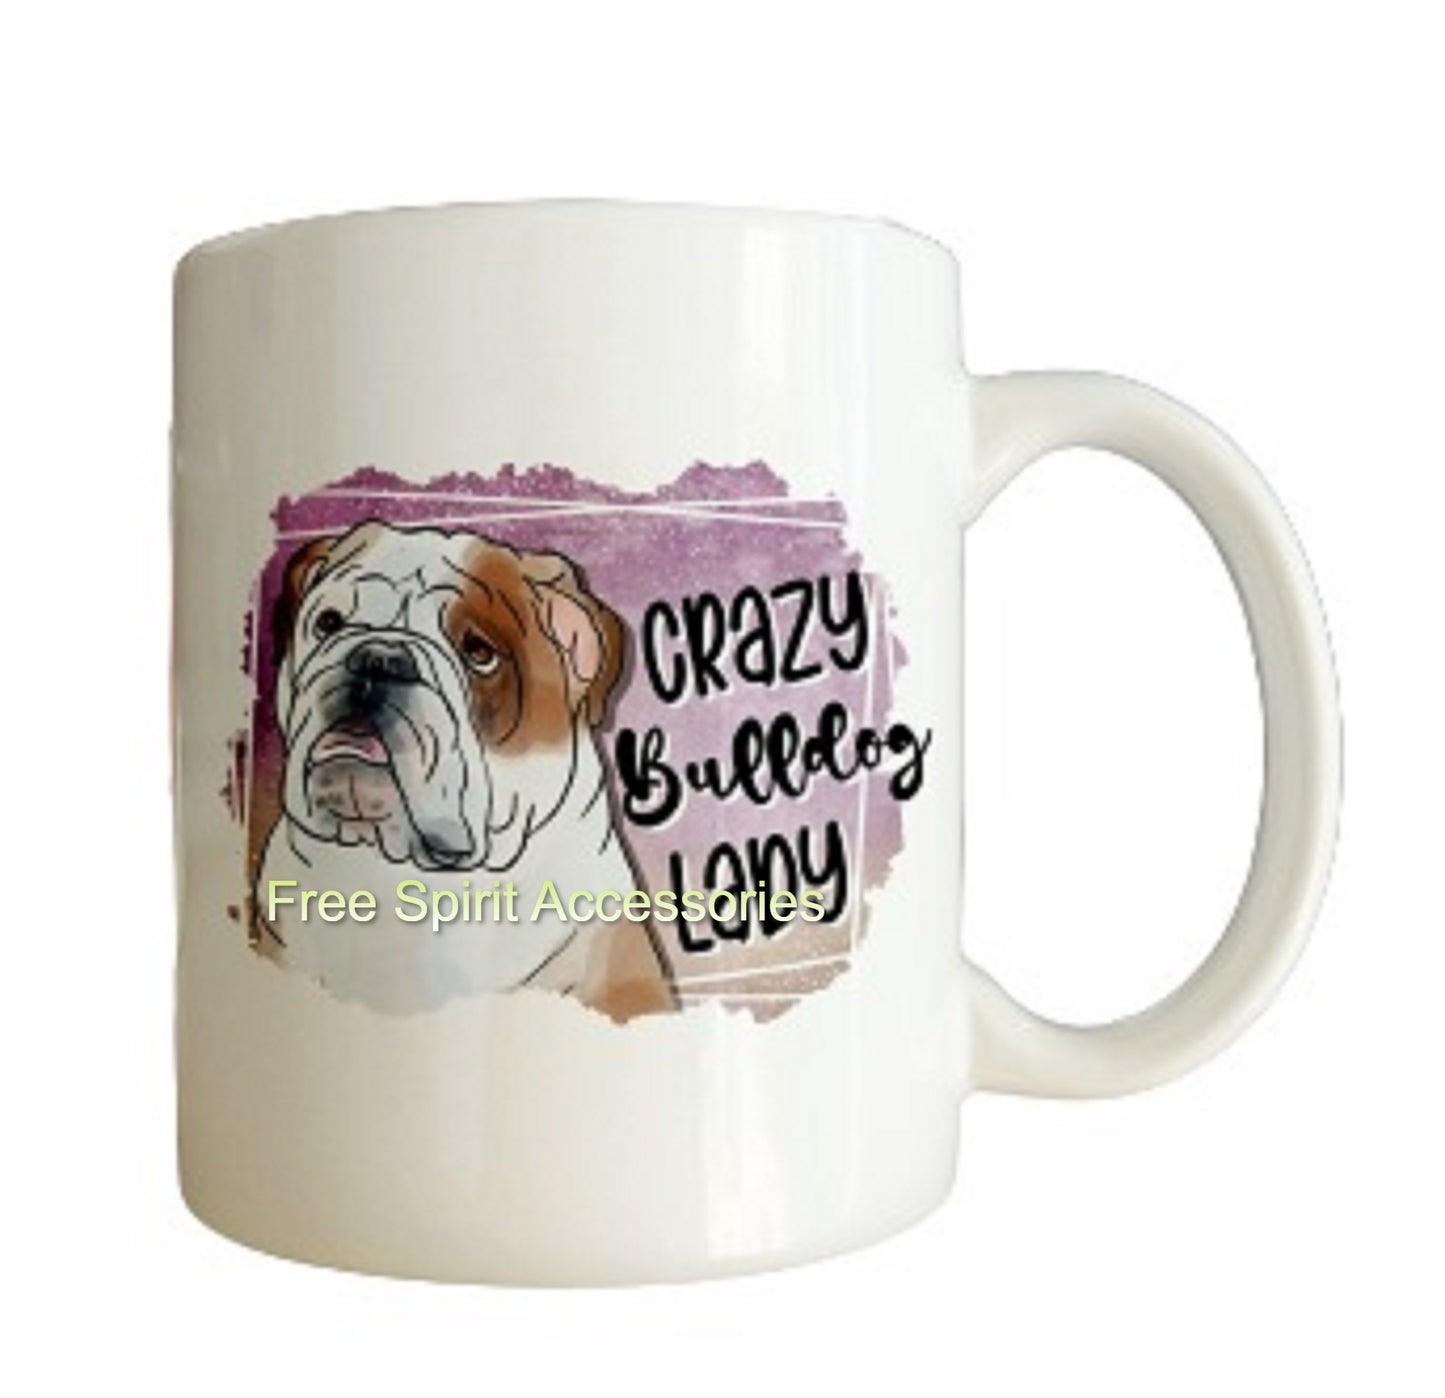  Crazy Bulldog Lady Coffee Mug by Free Spirit Accessories sold by Free Spirit Accessories